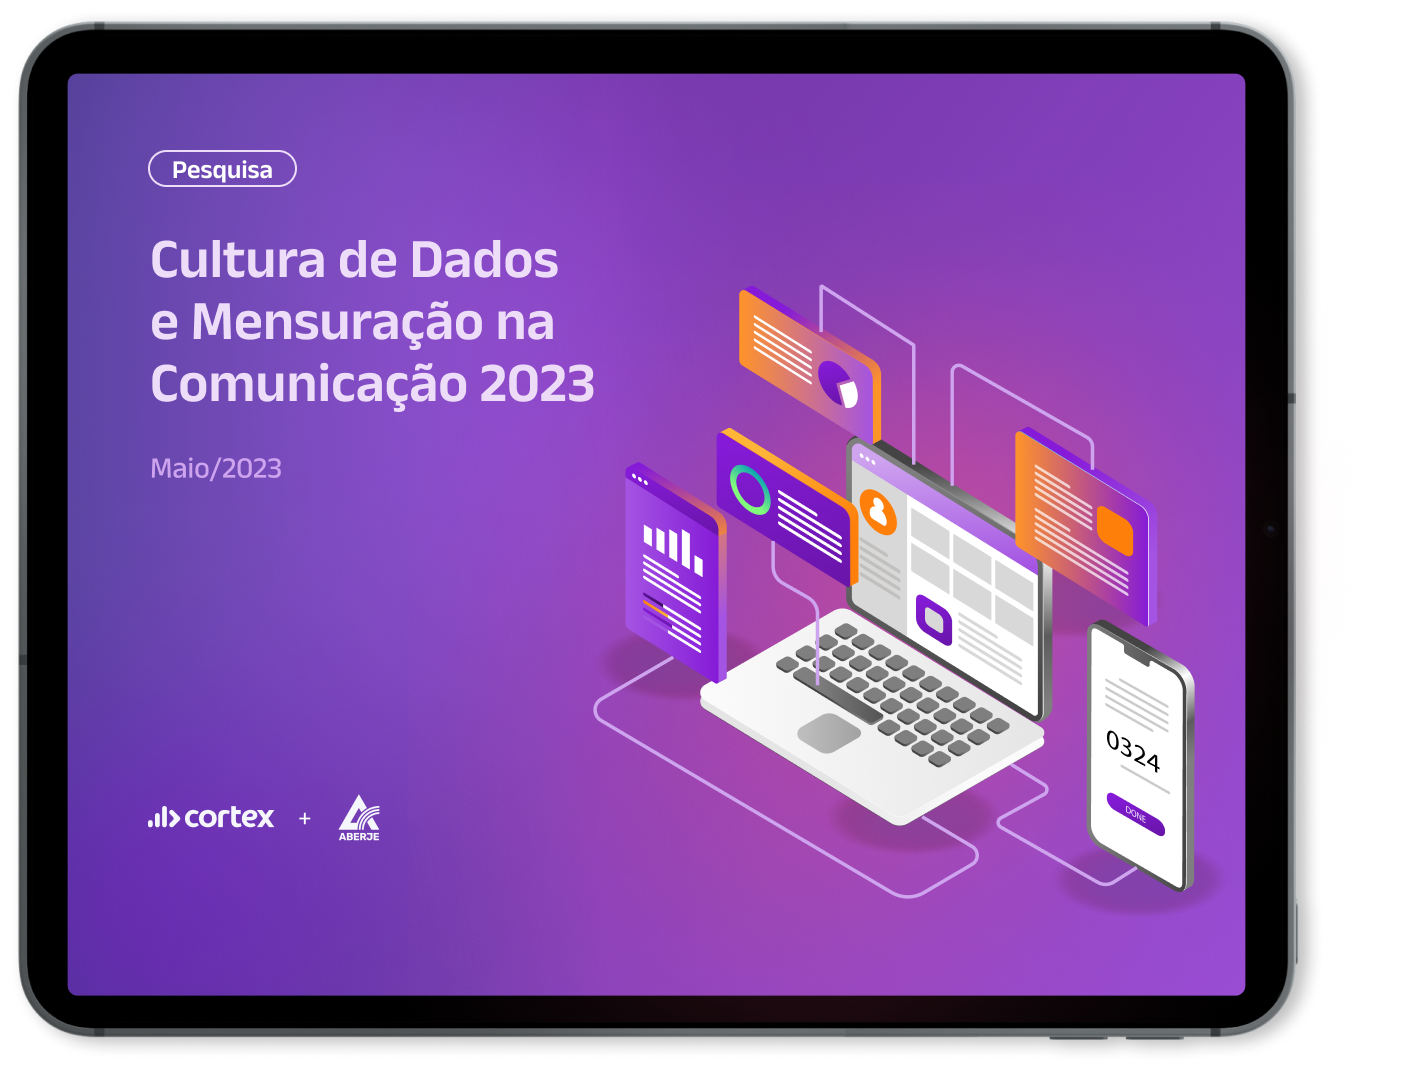 Mockup de Tablet com capa da pesquisa aberje - Cultura de Dados  e Mensuração na Comunicação 2023